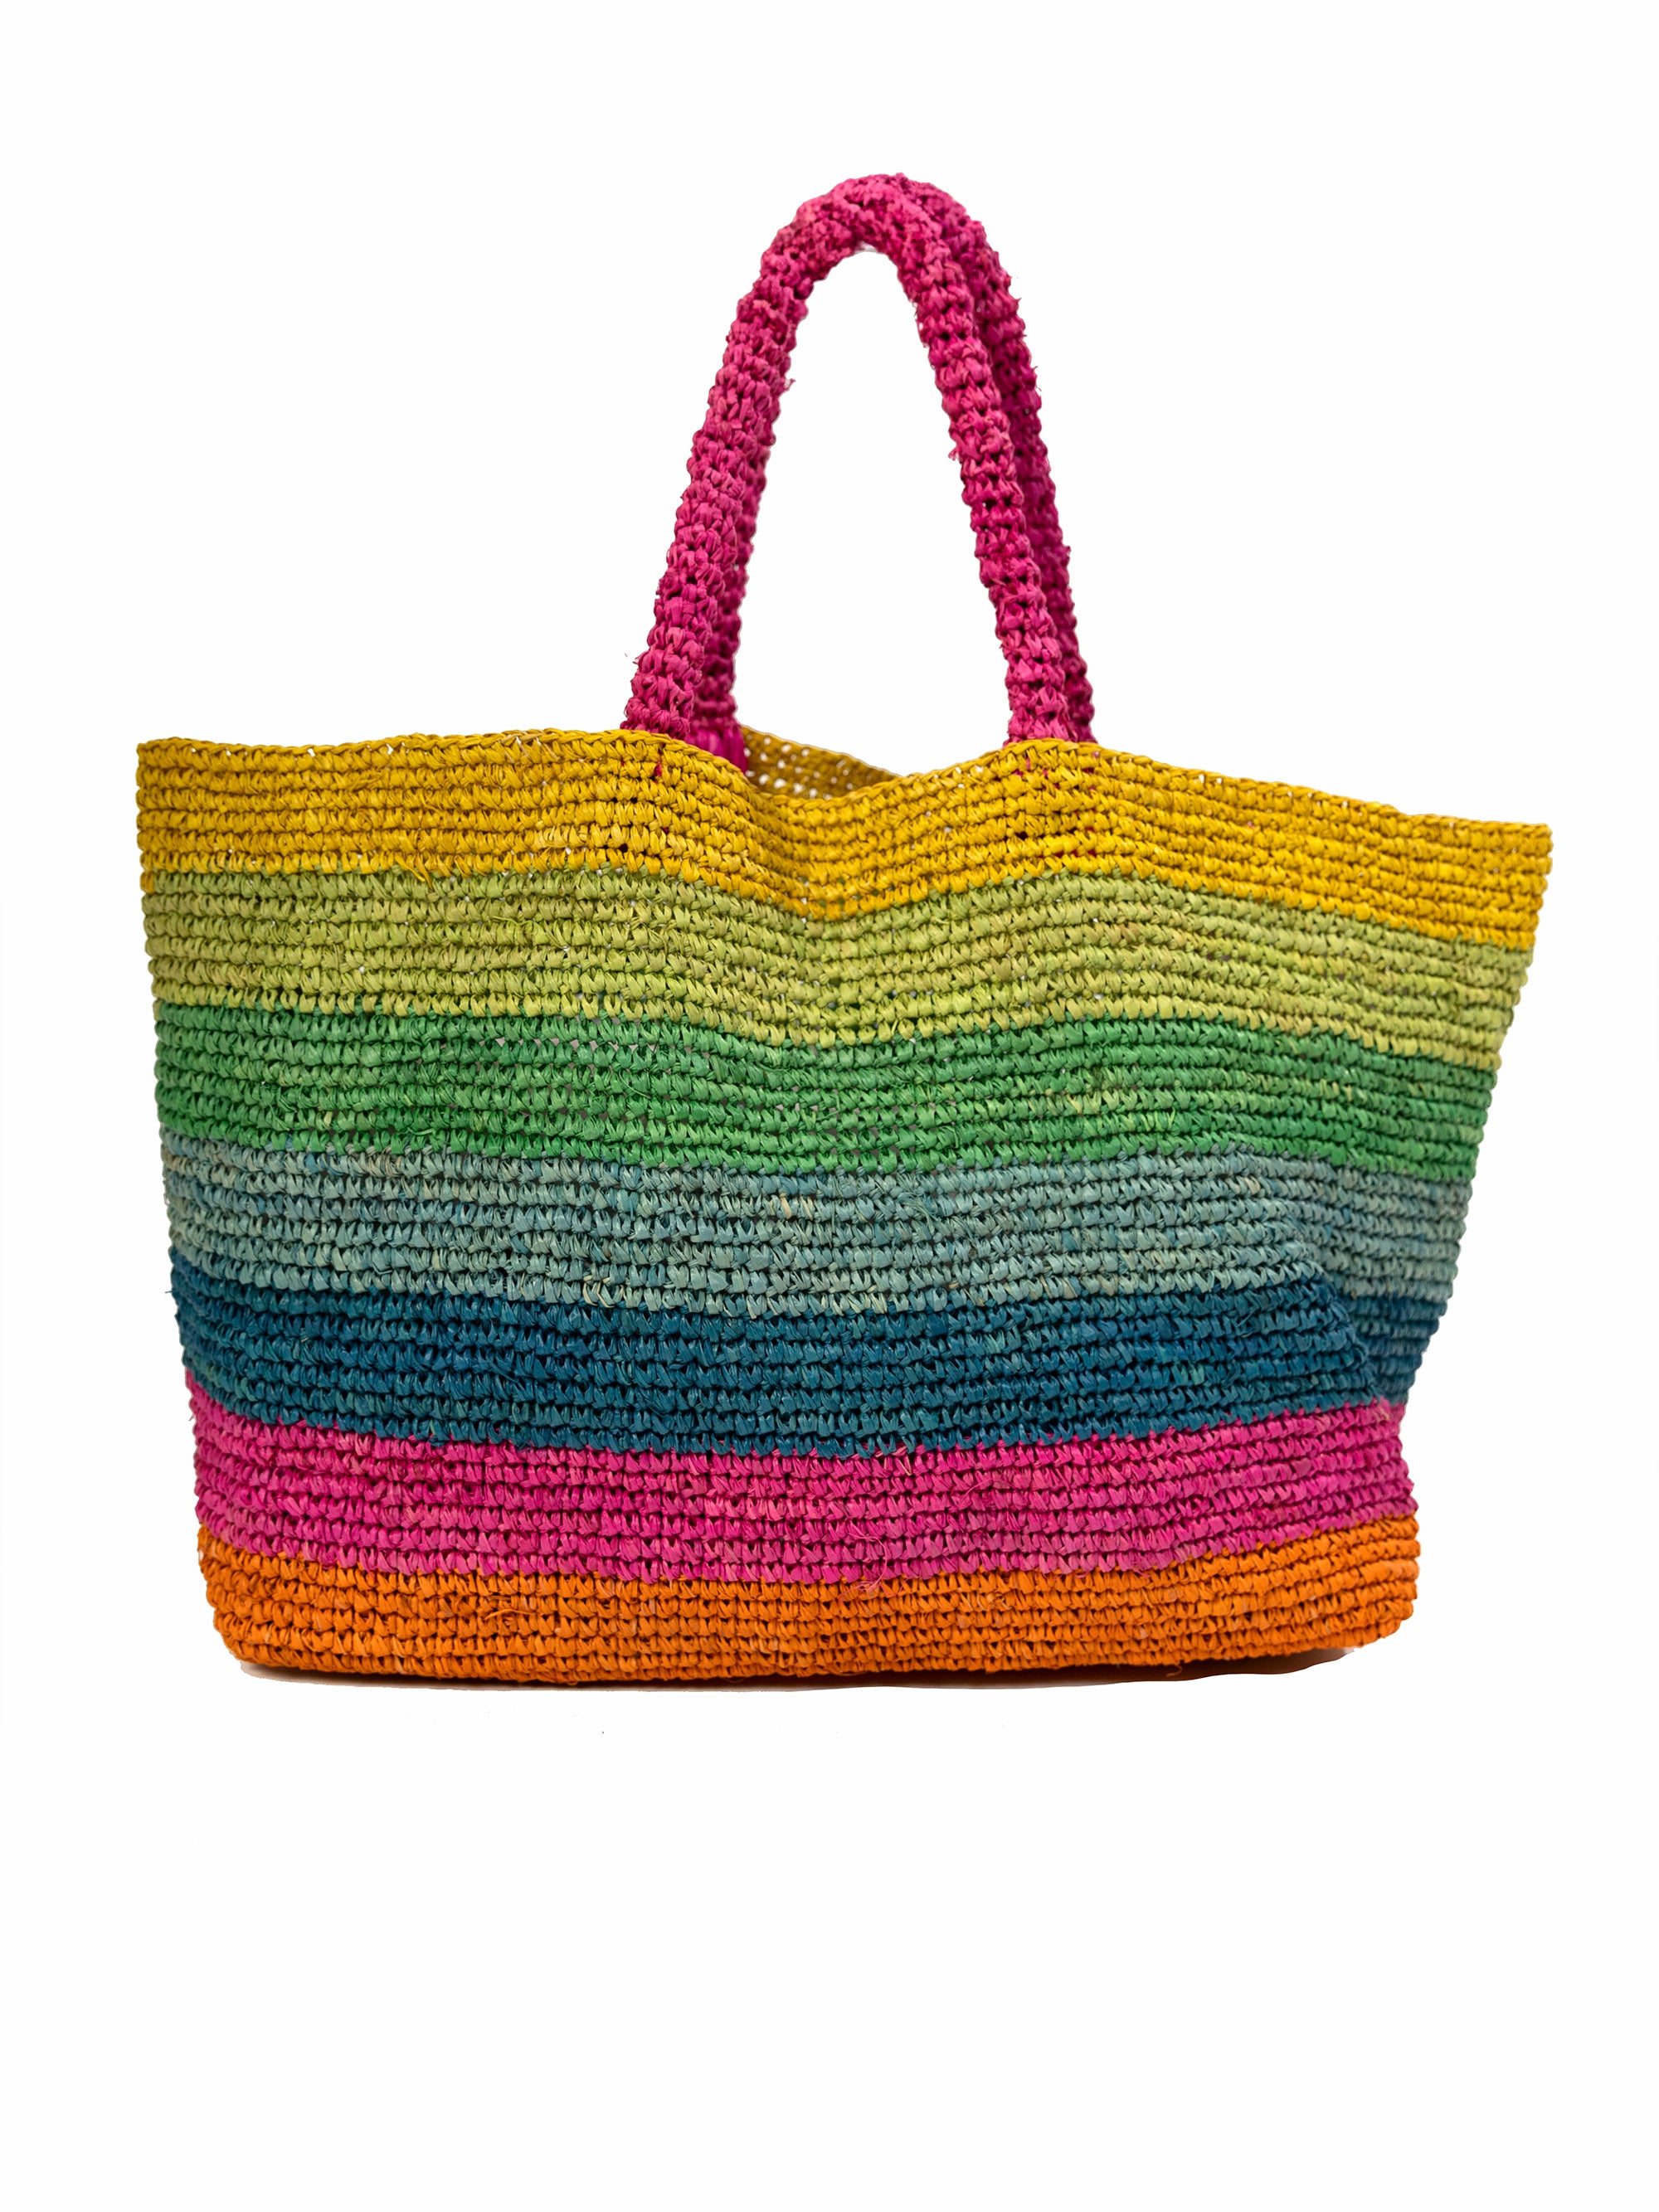 Multicolored striped raffia bag